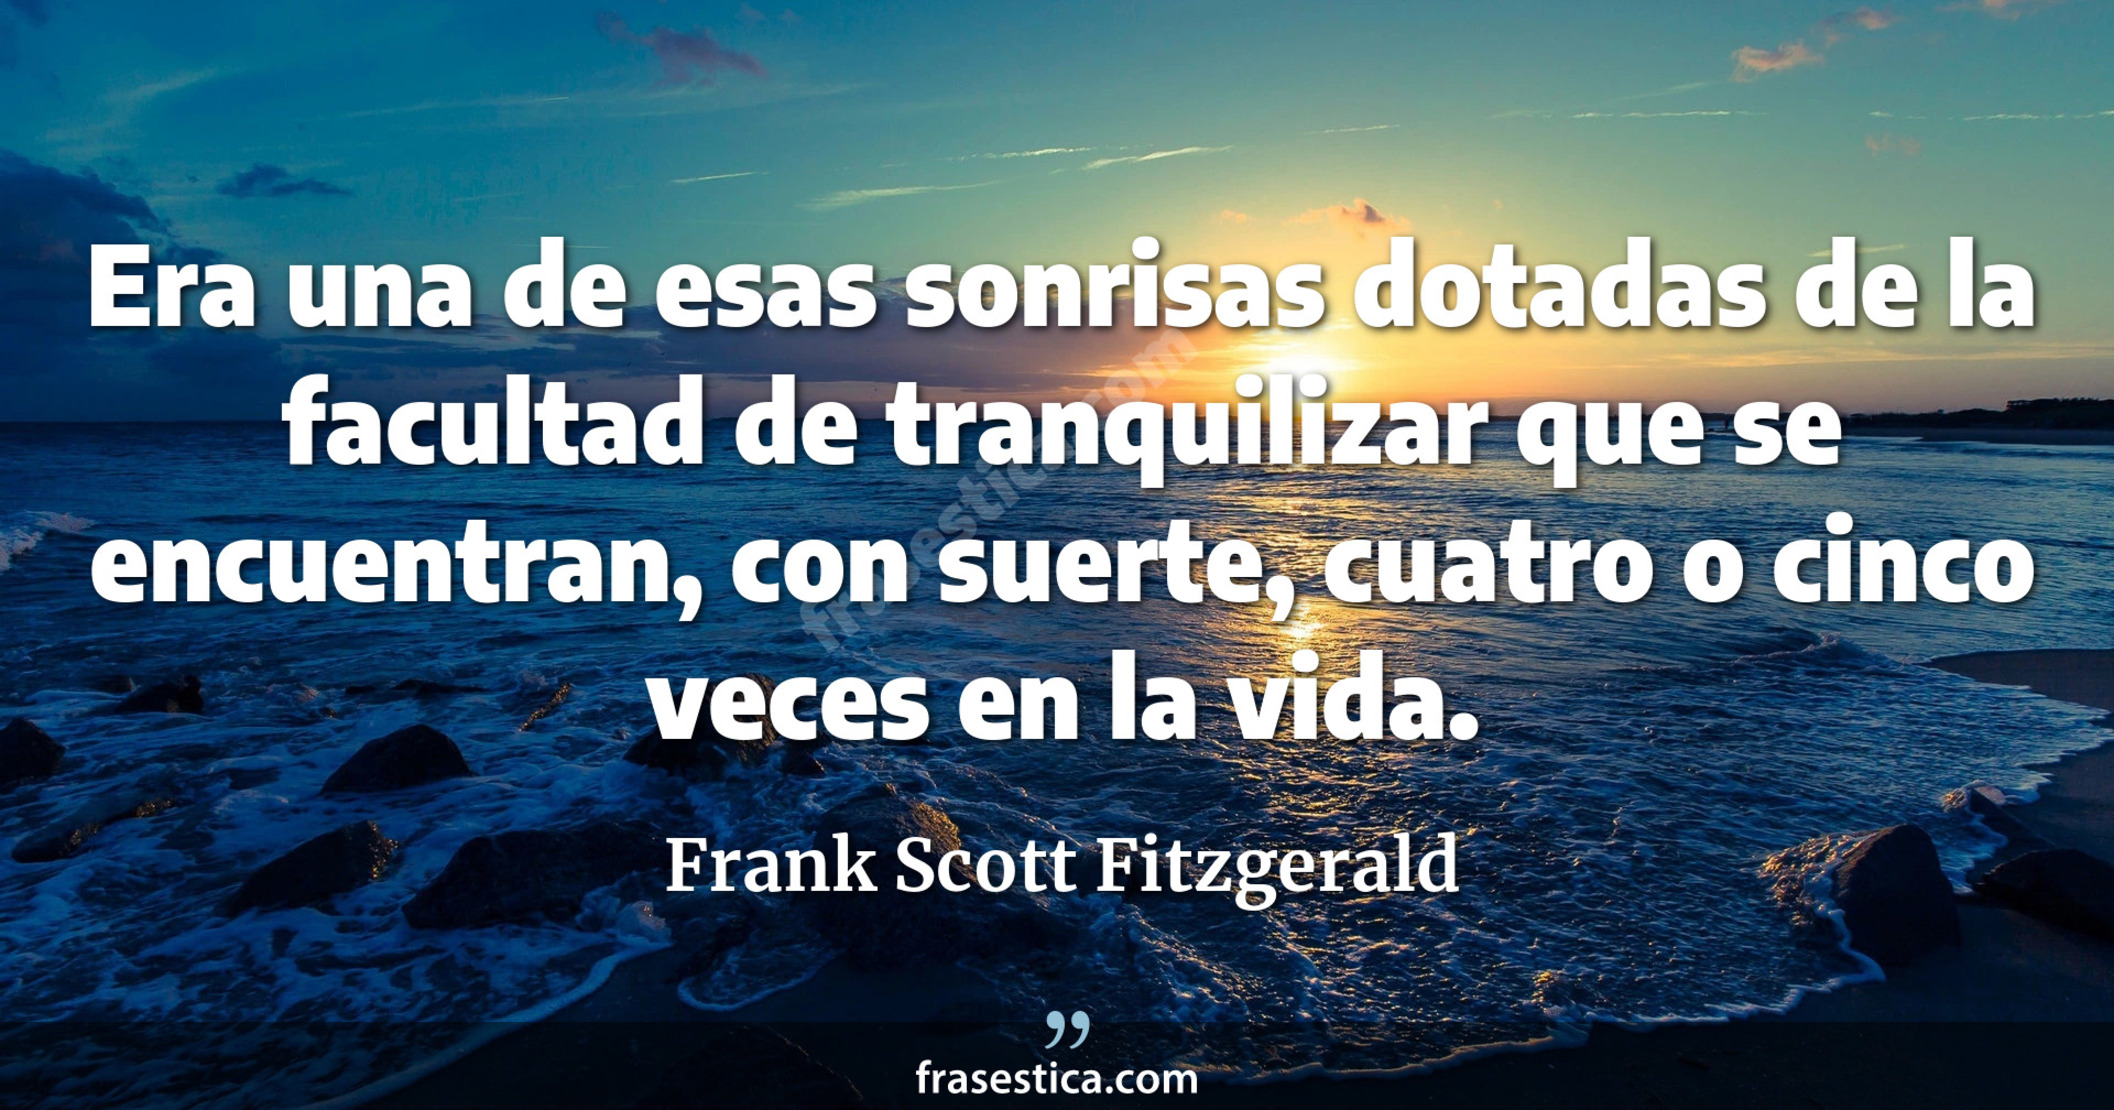 Era una de esas sonrisas dotadas de la facultad de tranquilizar que se encuentran, con suerte, cuatro o cinco veces en la vida. - Frank Scott Fitzgerald